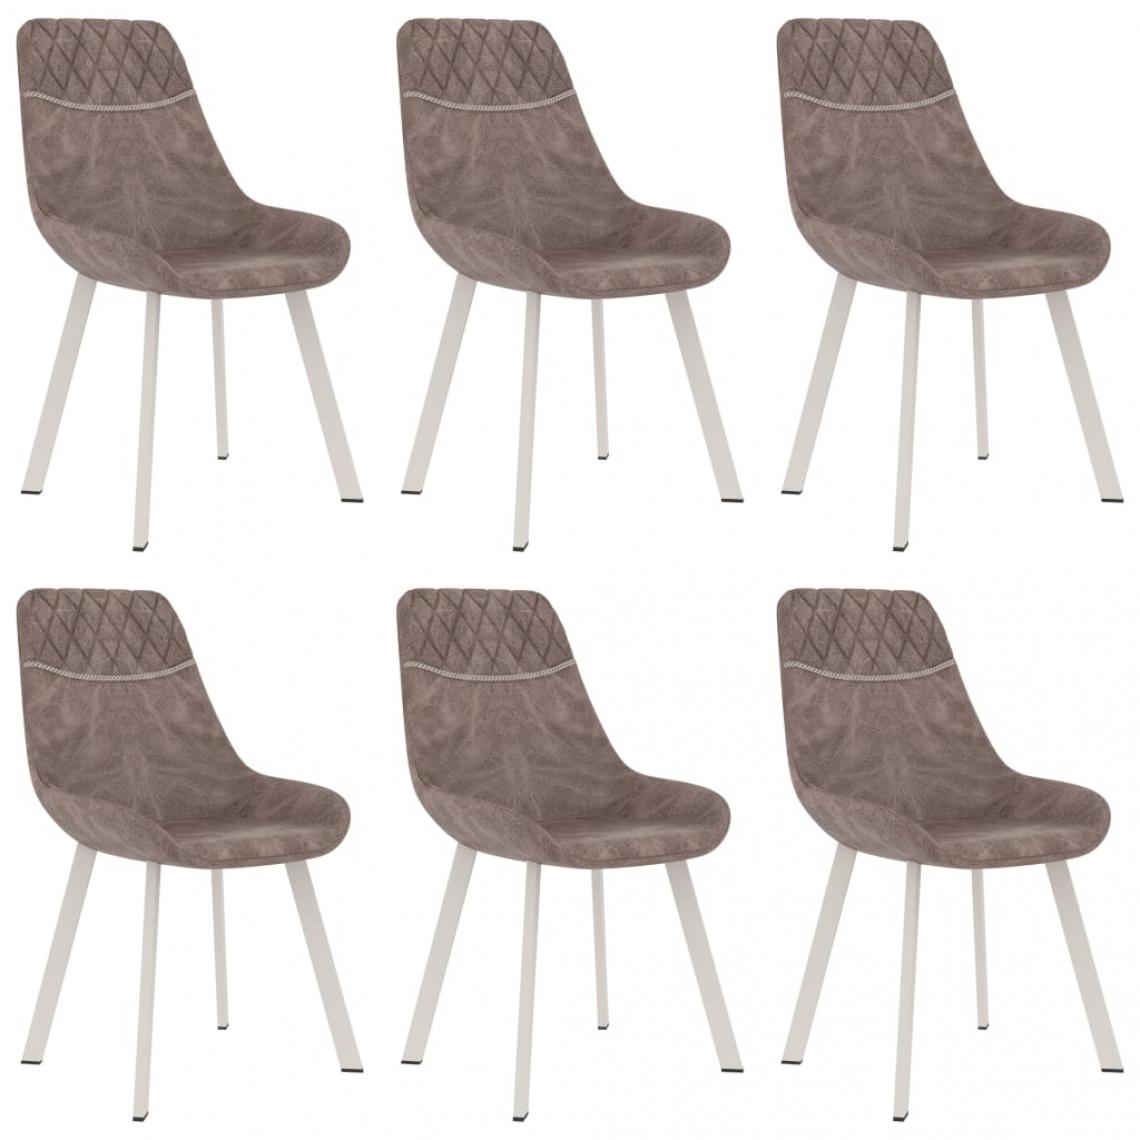 Decoshop26 - Lot de 6 chaises de salle à manger cuisine design moderne similicuir marron CDS022605 - Chaises